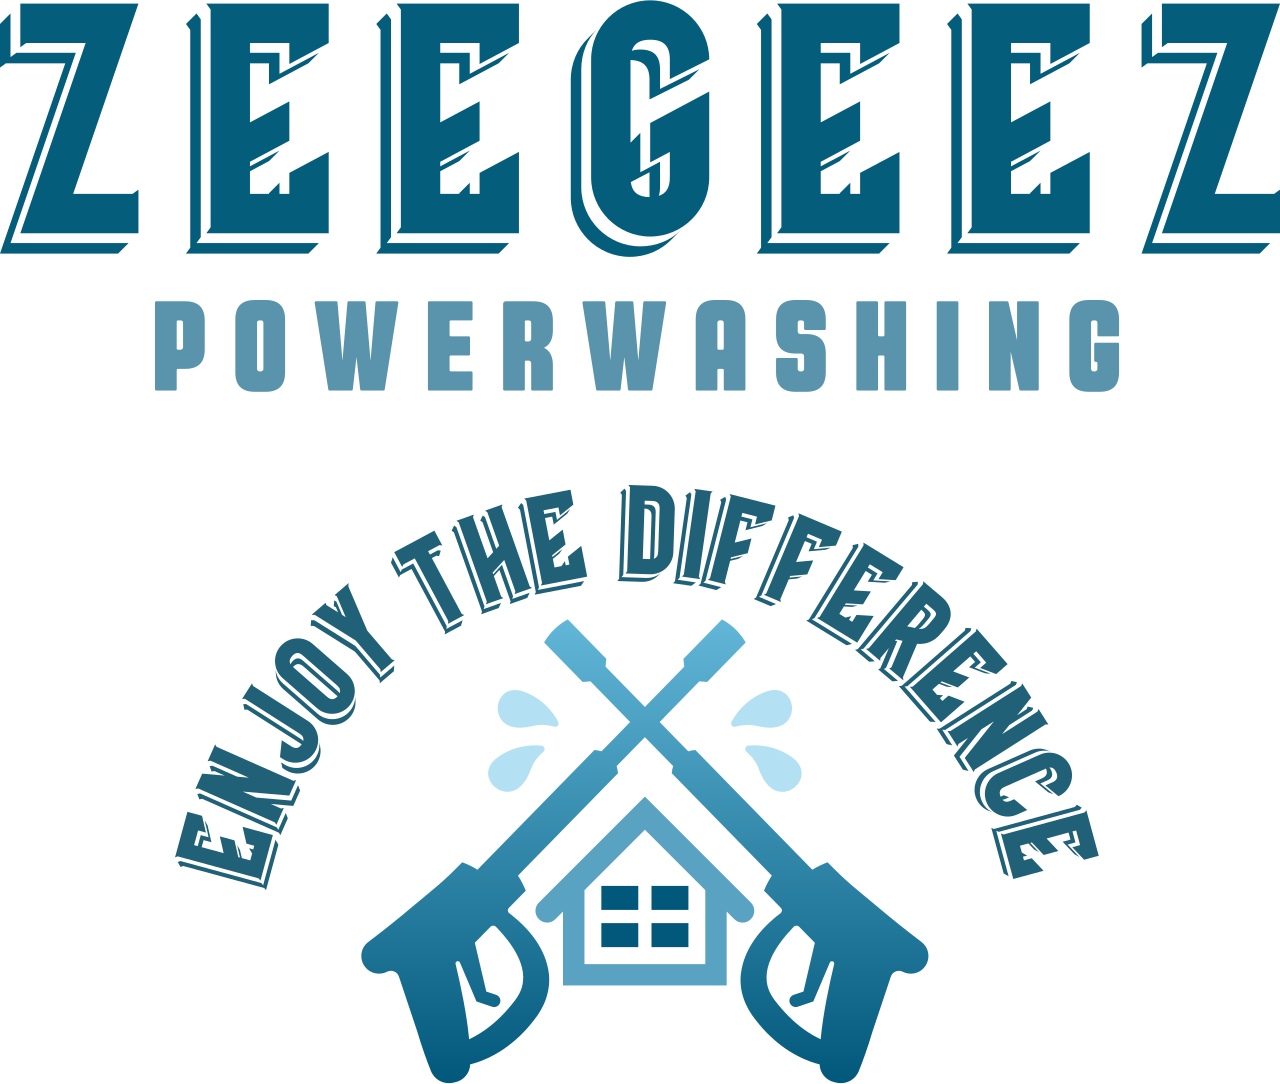 Zeegeez's logo